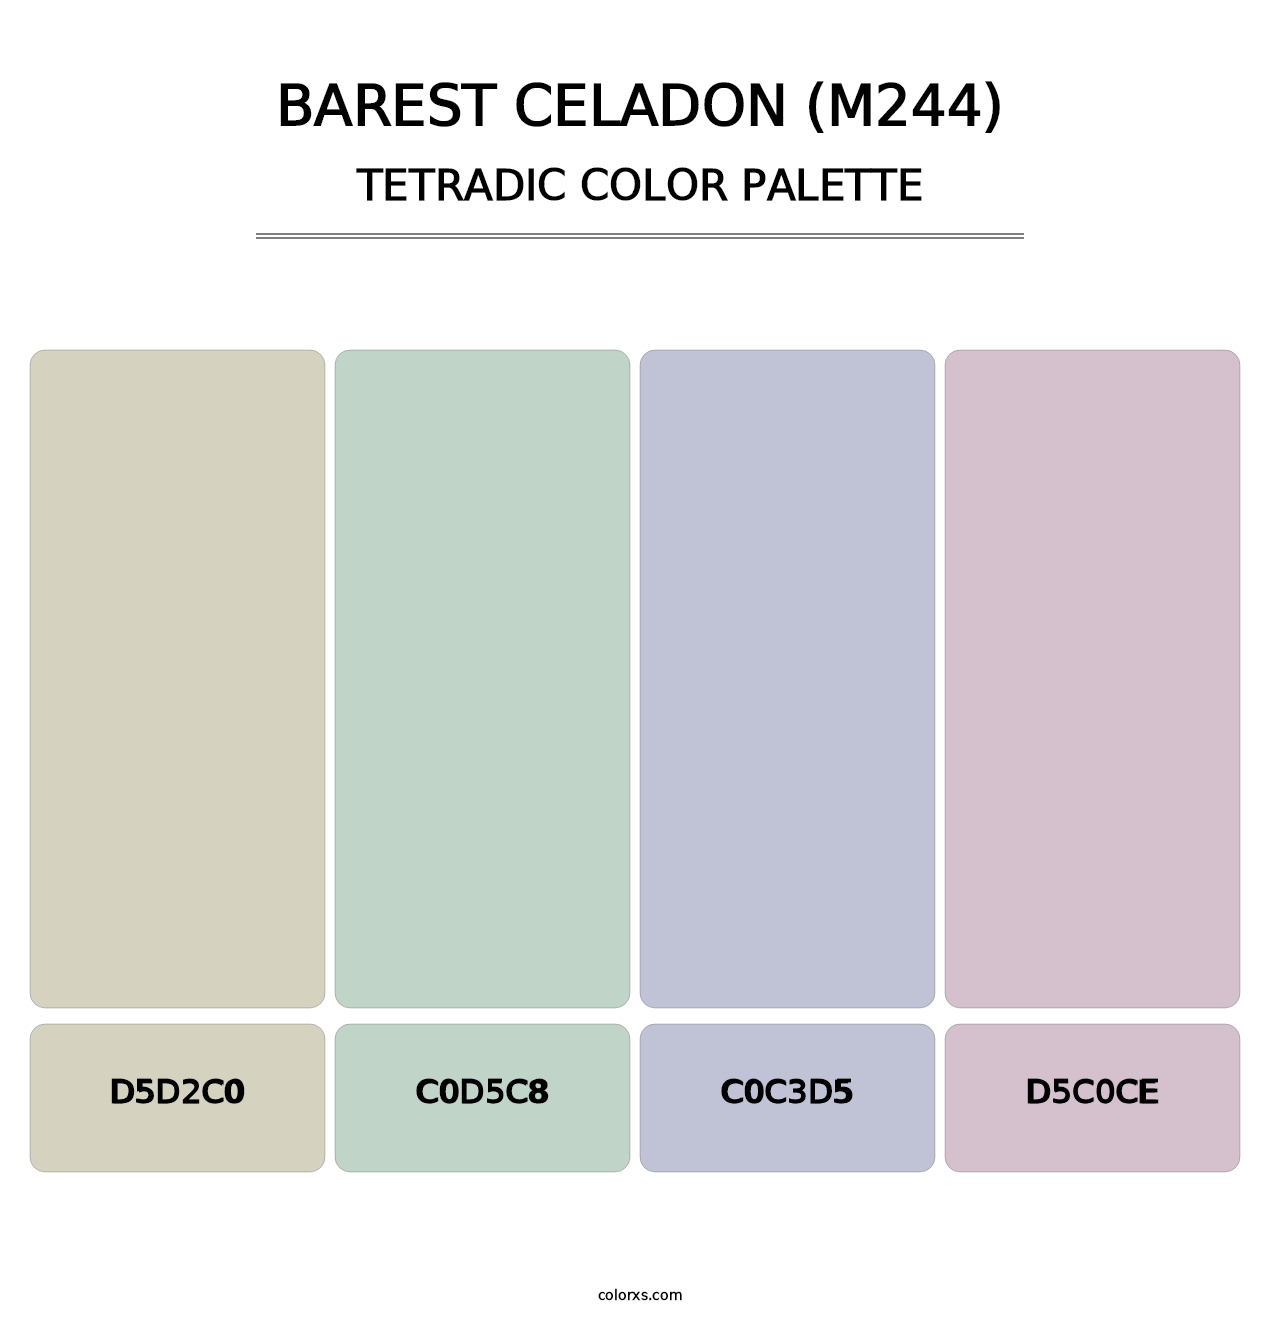 Barest Celadon (M244) - Tetradic Color Palette